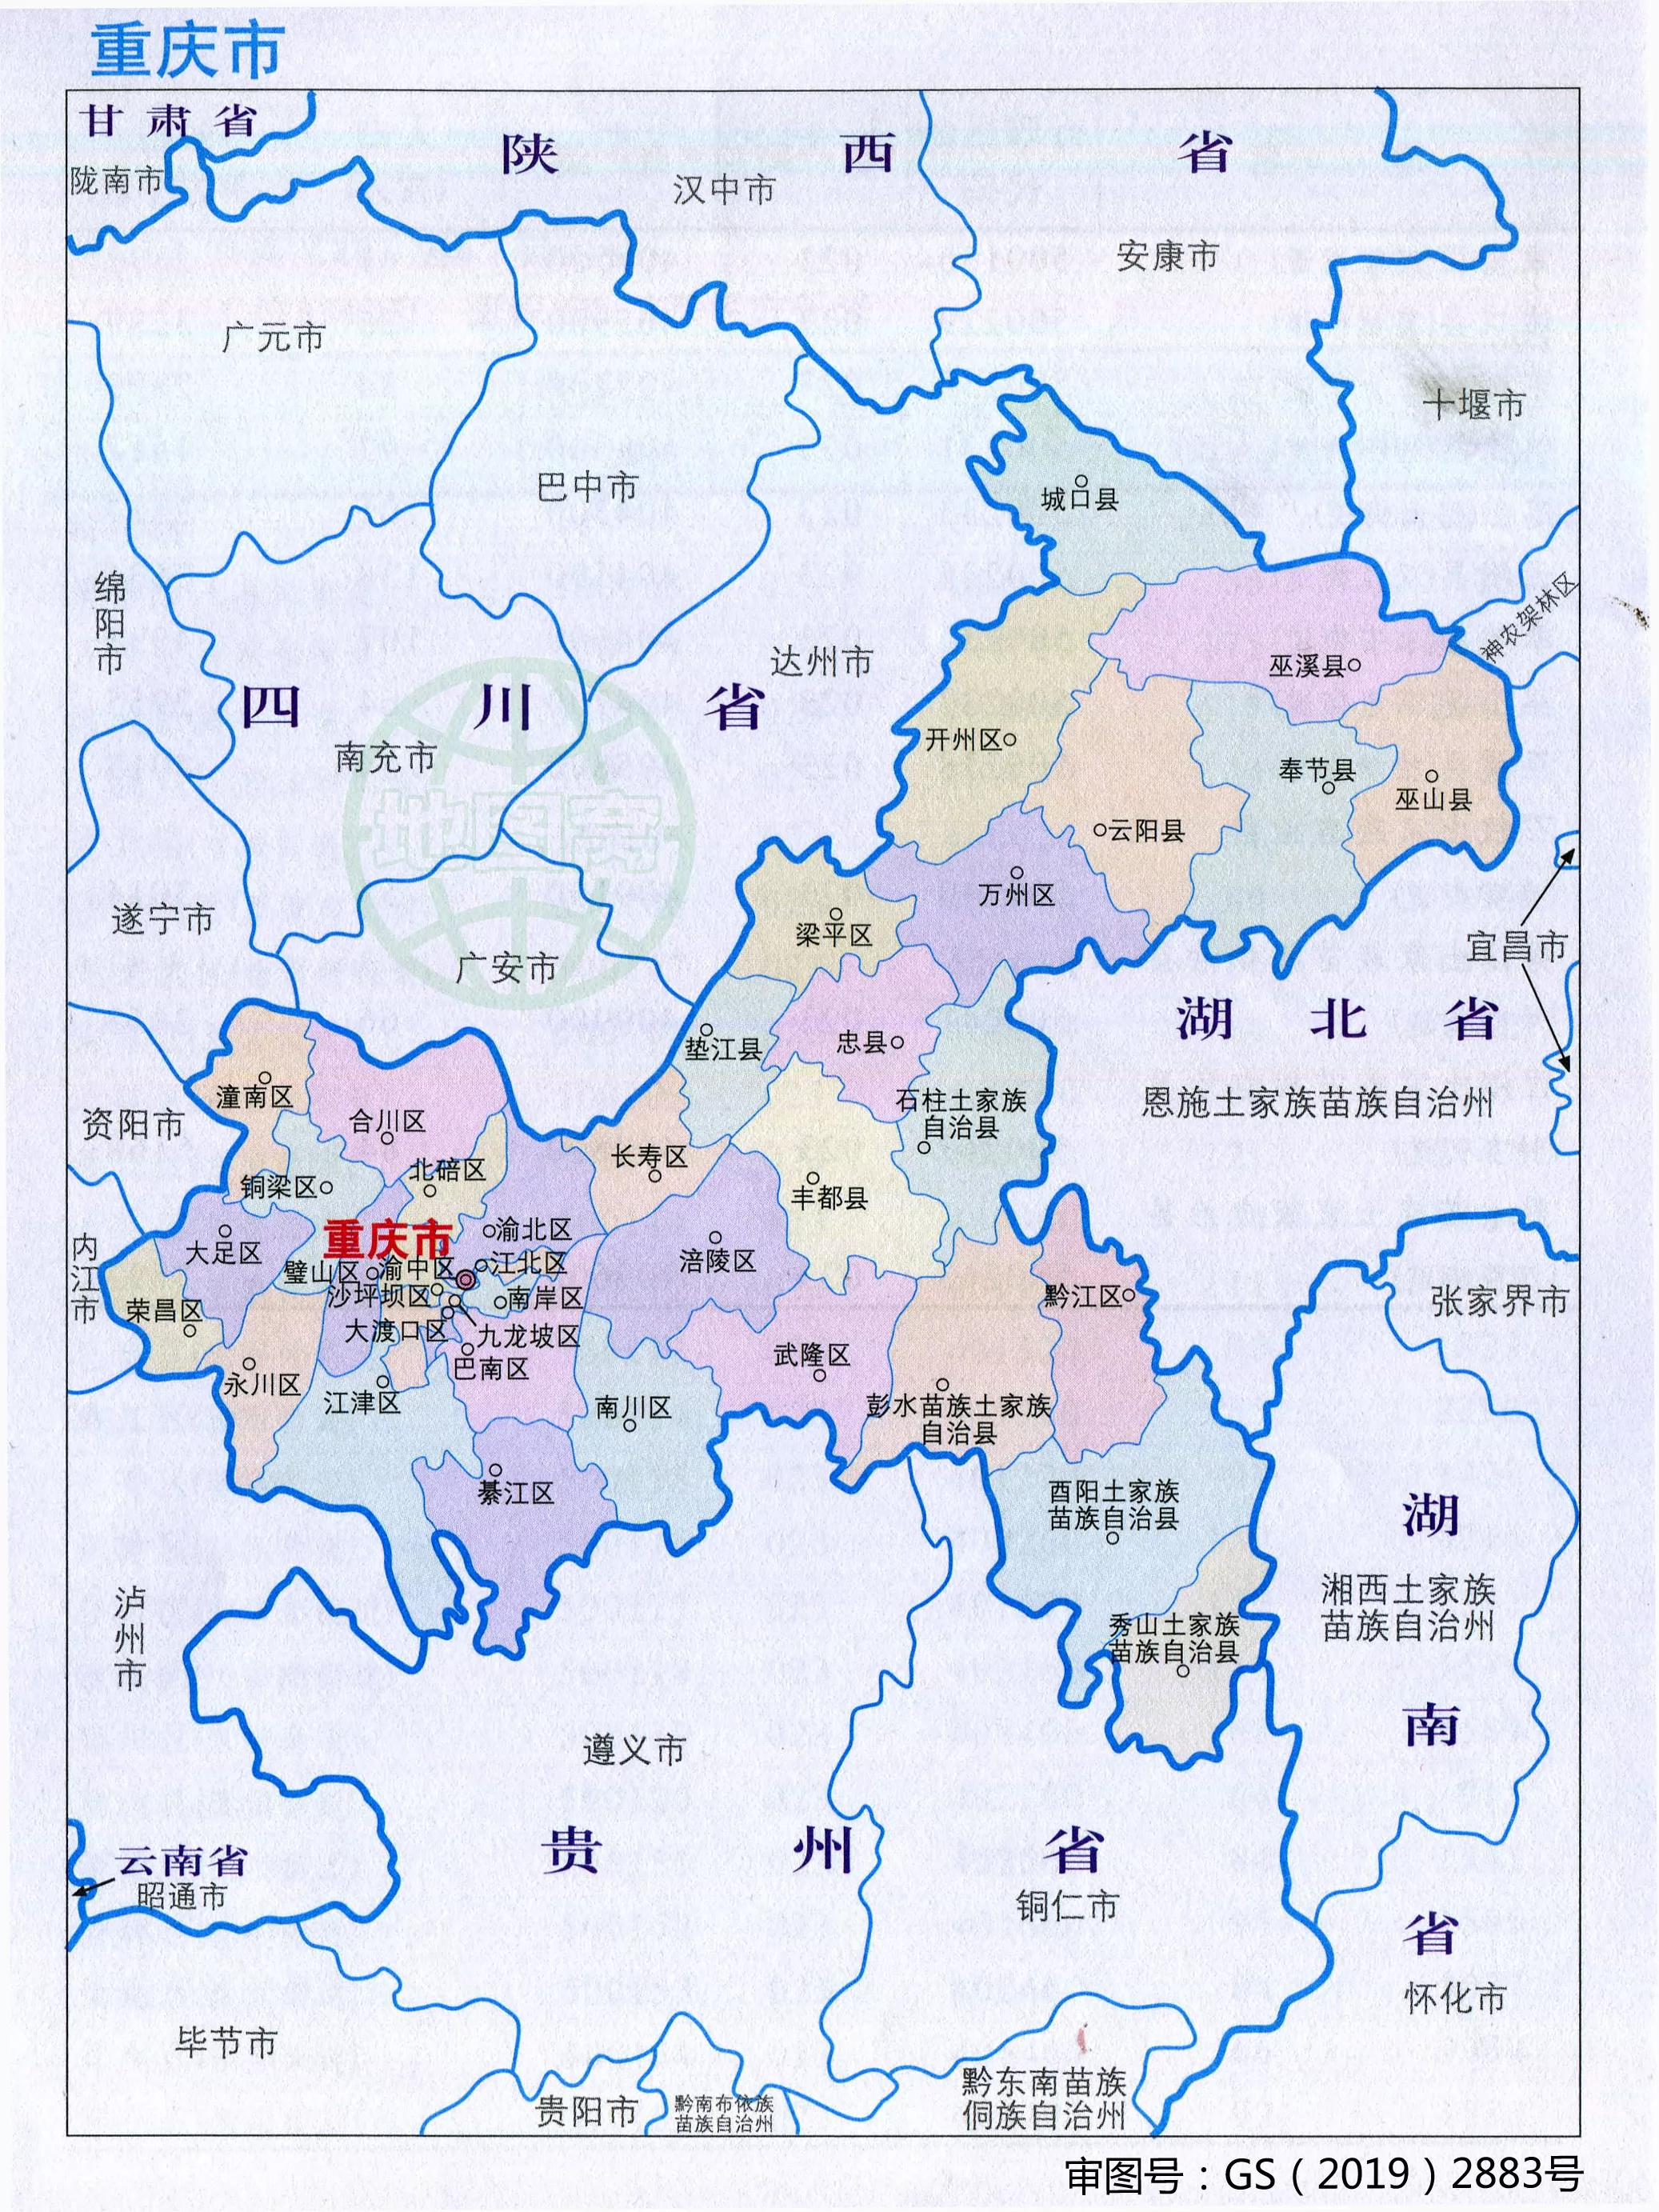 重庆交通地图2017版_交通地图库_地图窝